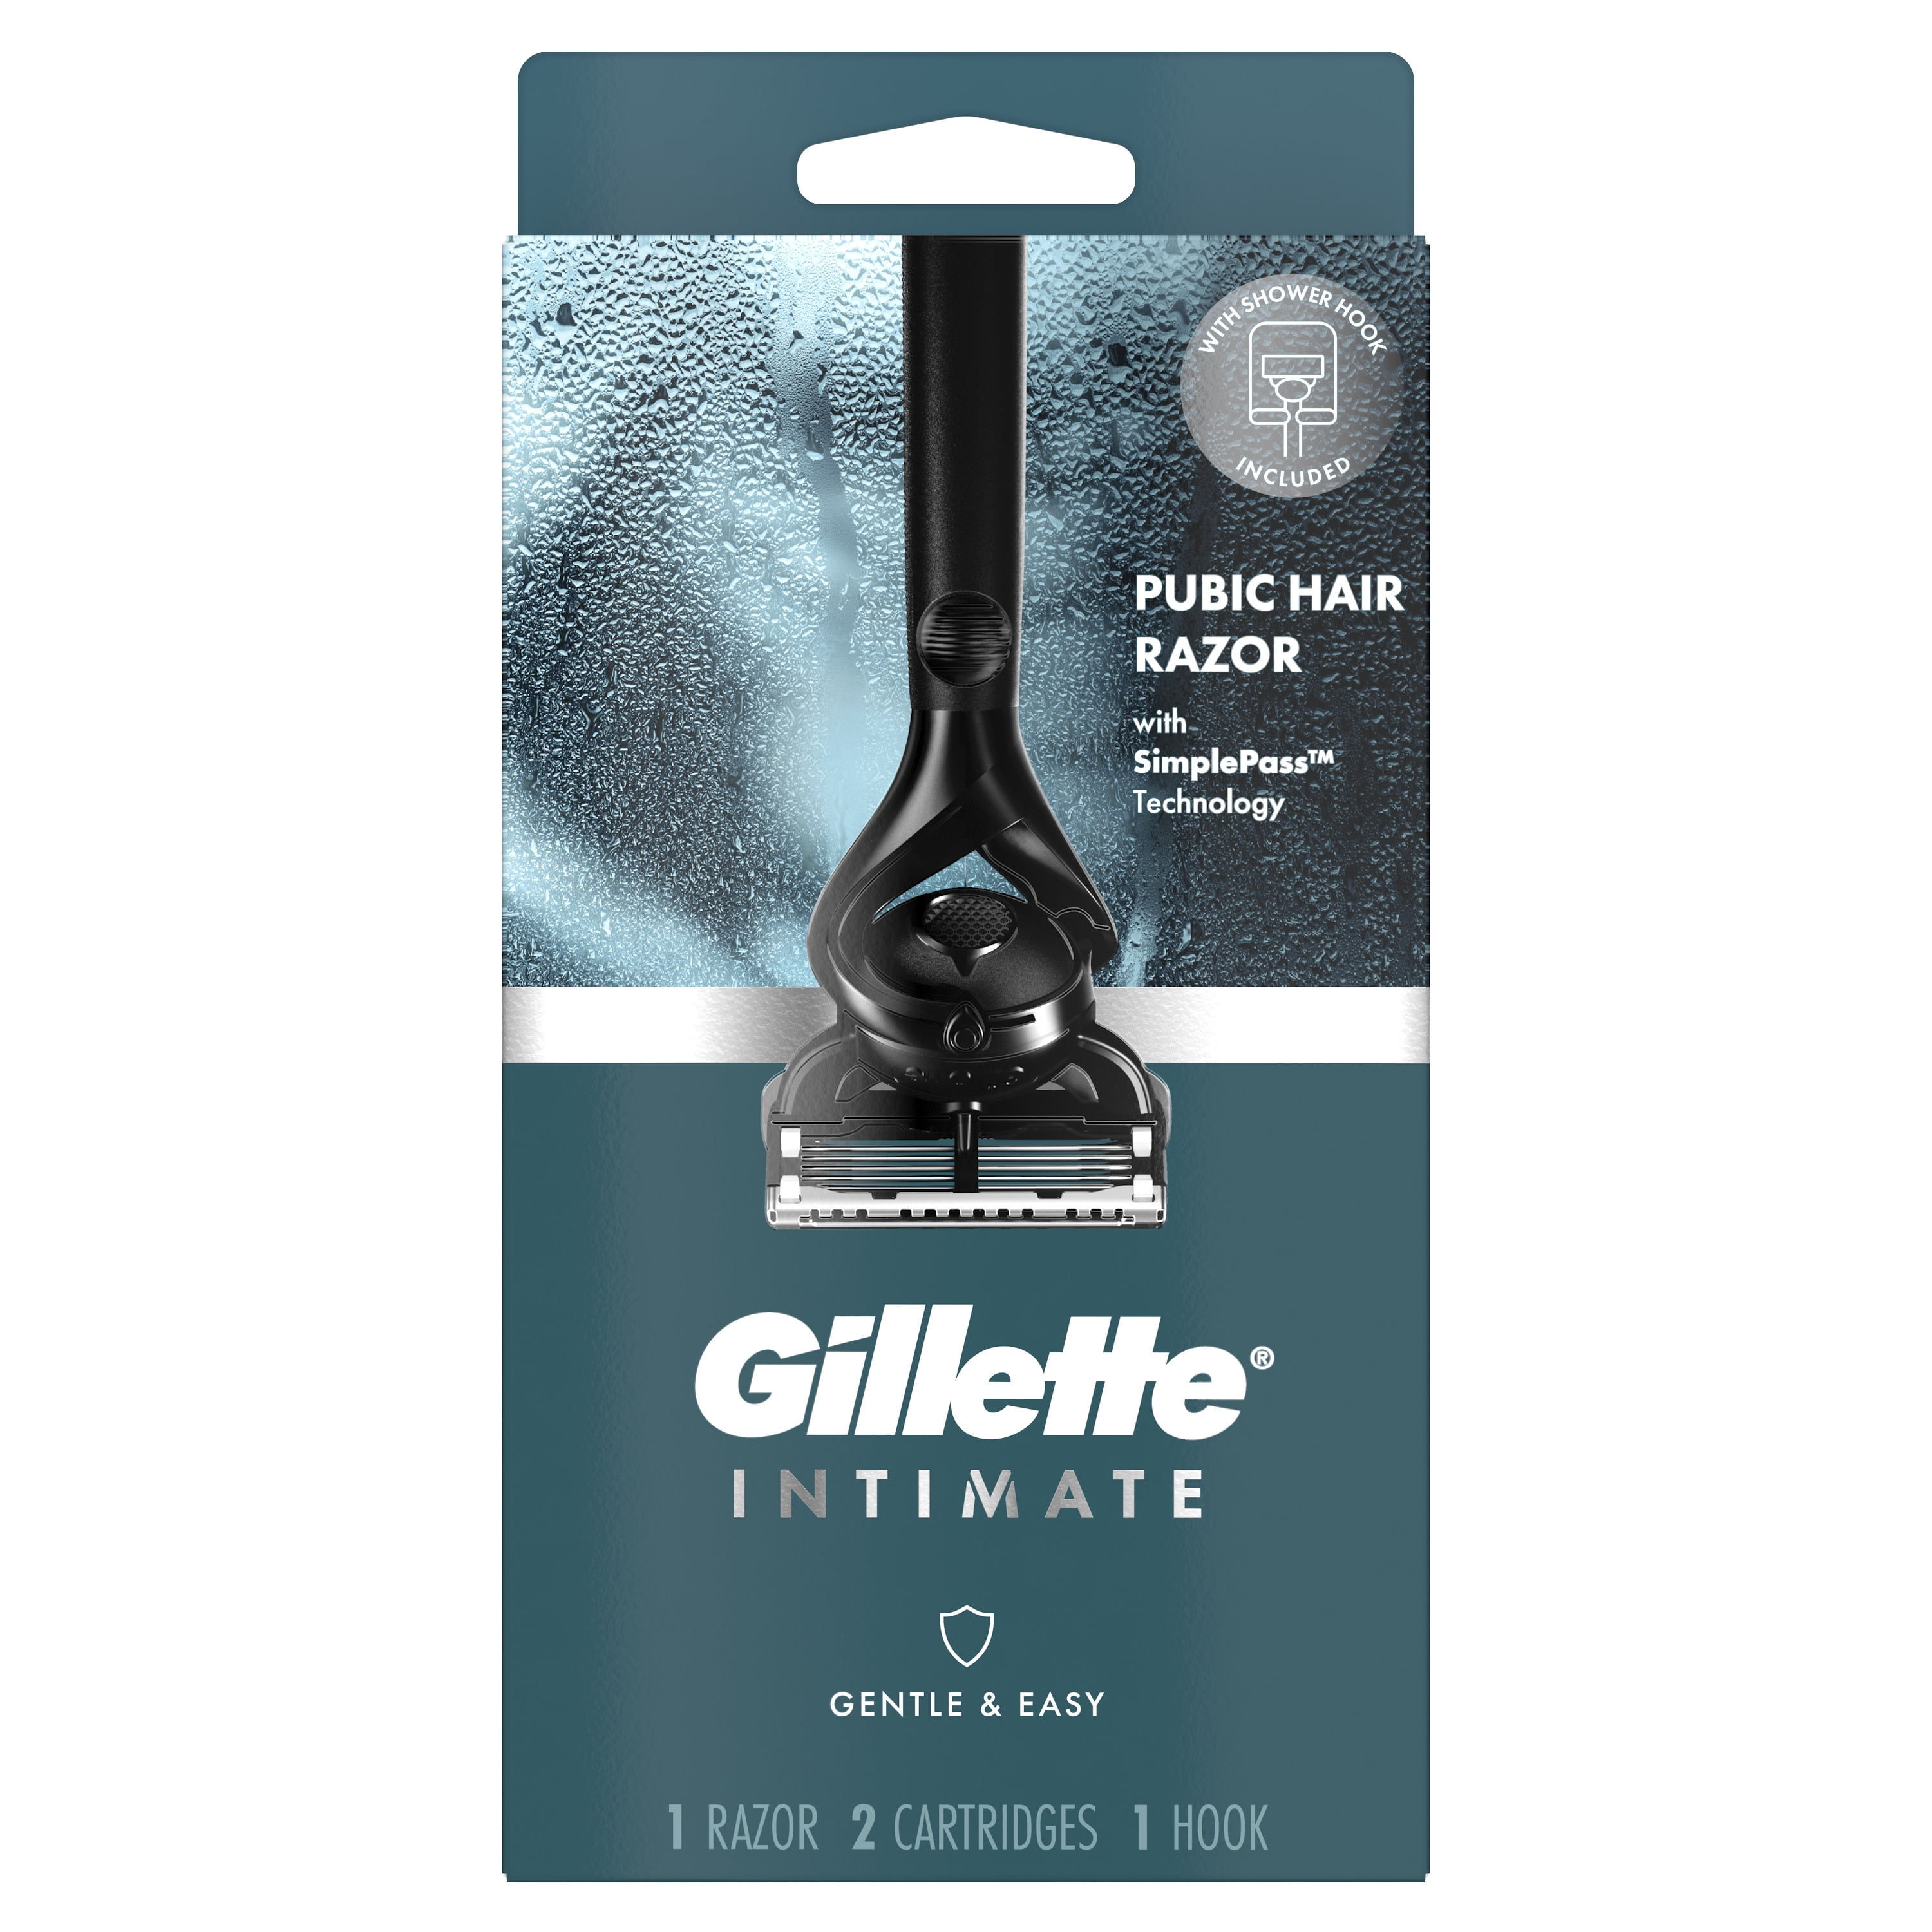  Gillette Intimate Manscape - Maquinilla de afeitar púbica para  hombre, suave y fácil de usar, diseñada para cabello púbico, 1 mango de  afeitar, 2 repuestos de cuchilla de afeitar, maquinilla de 